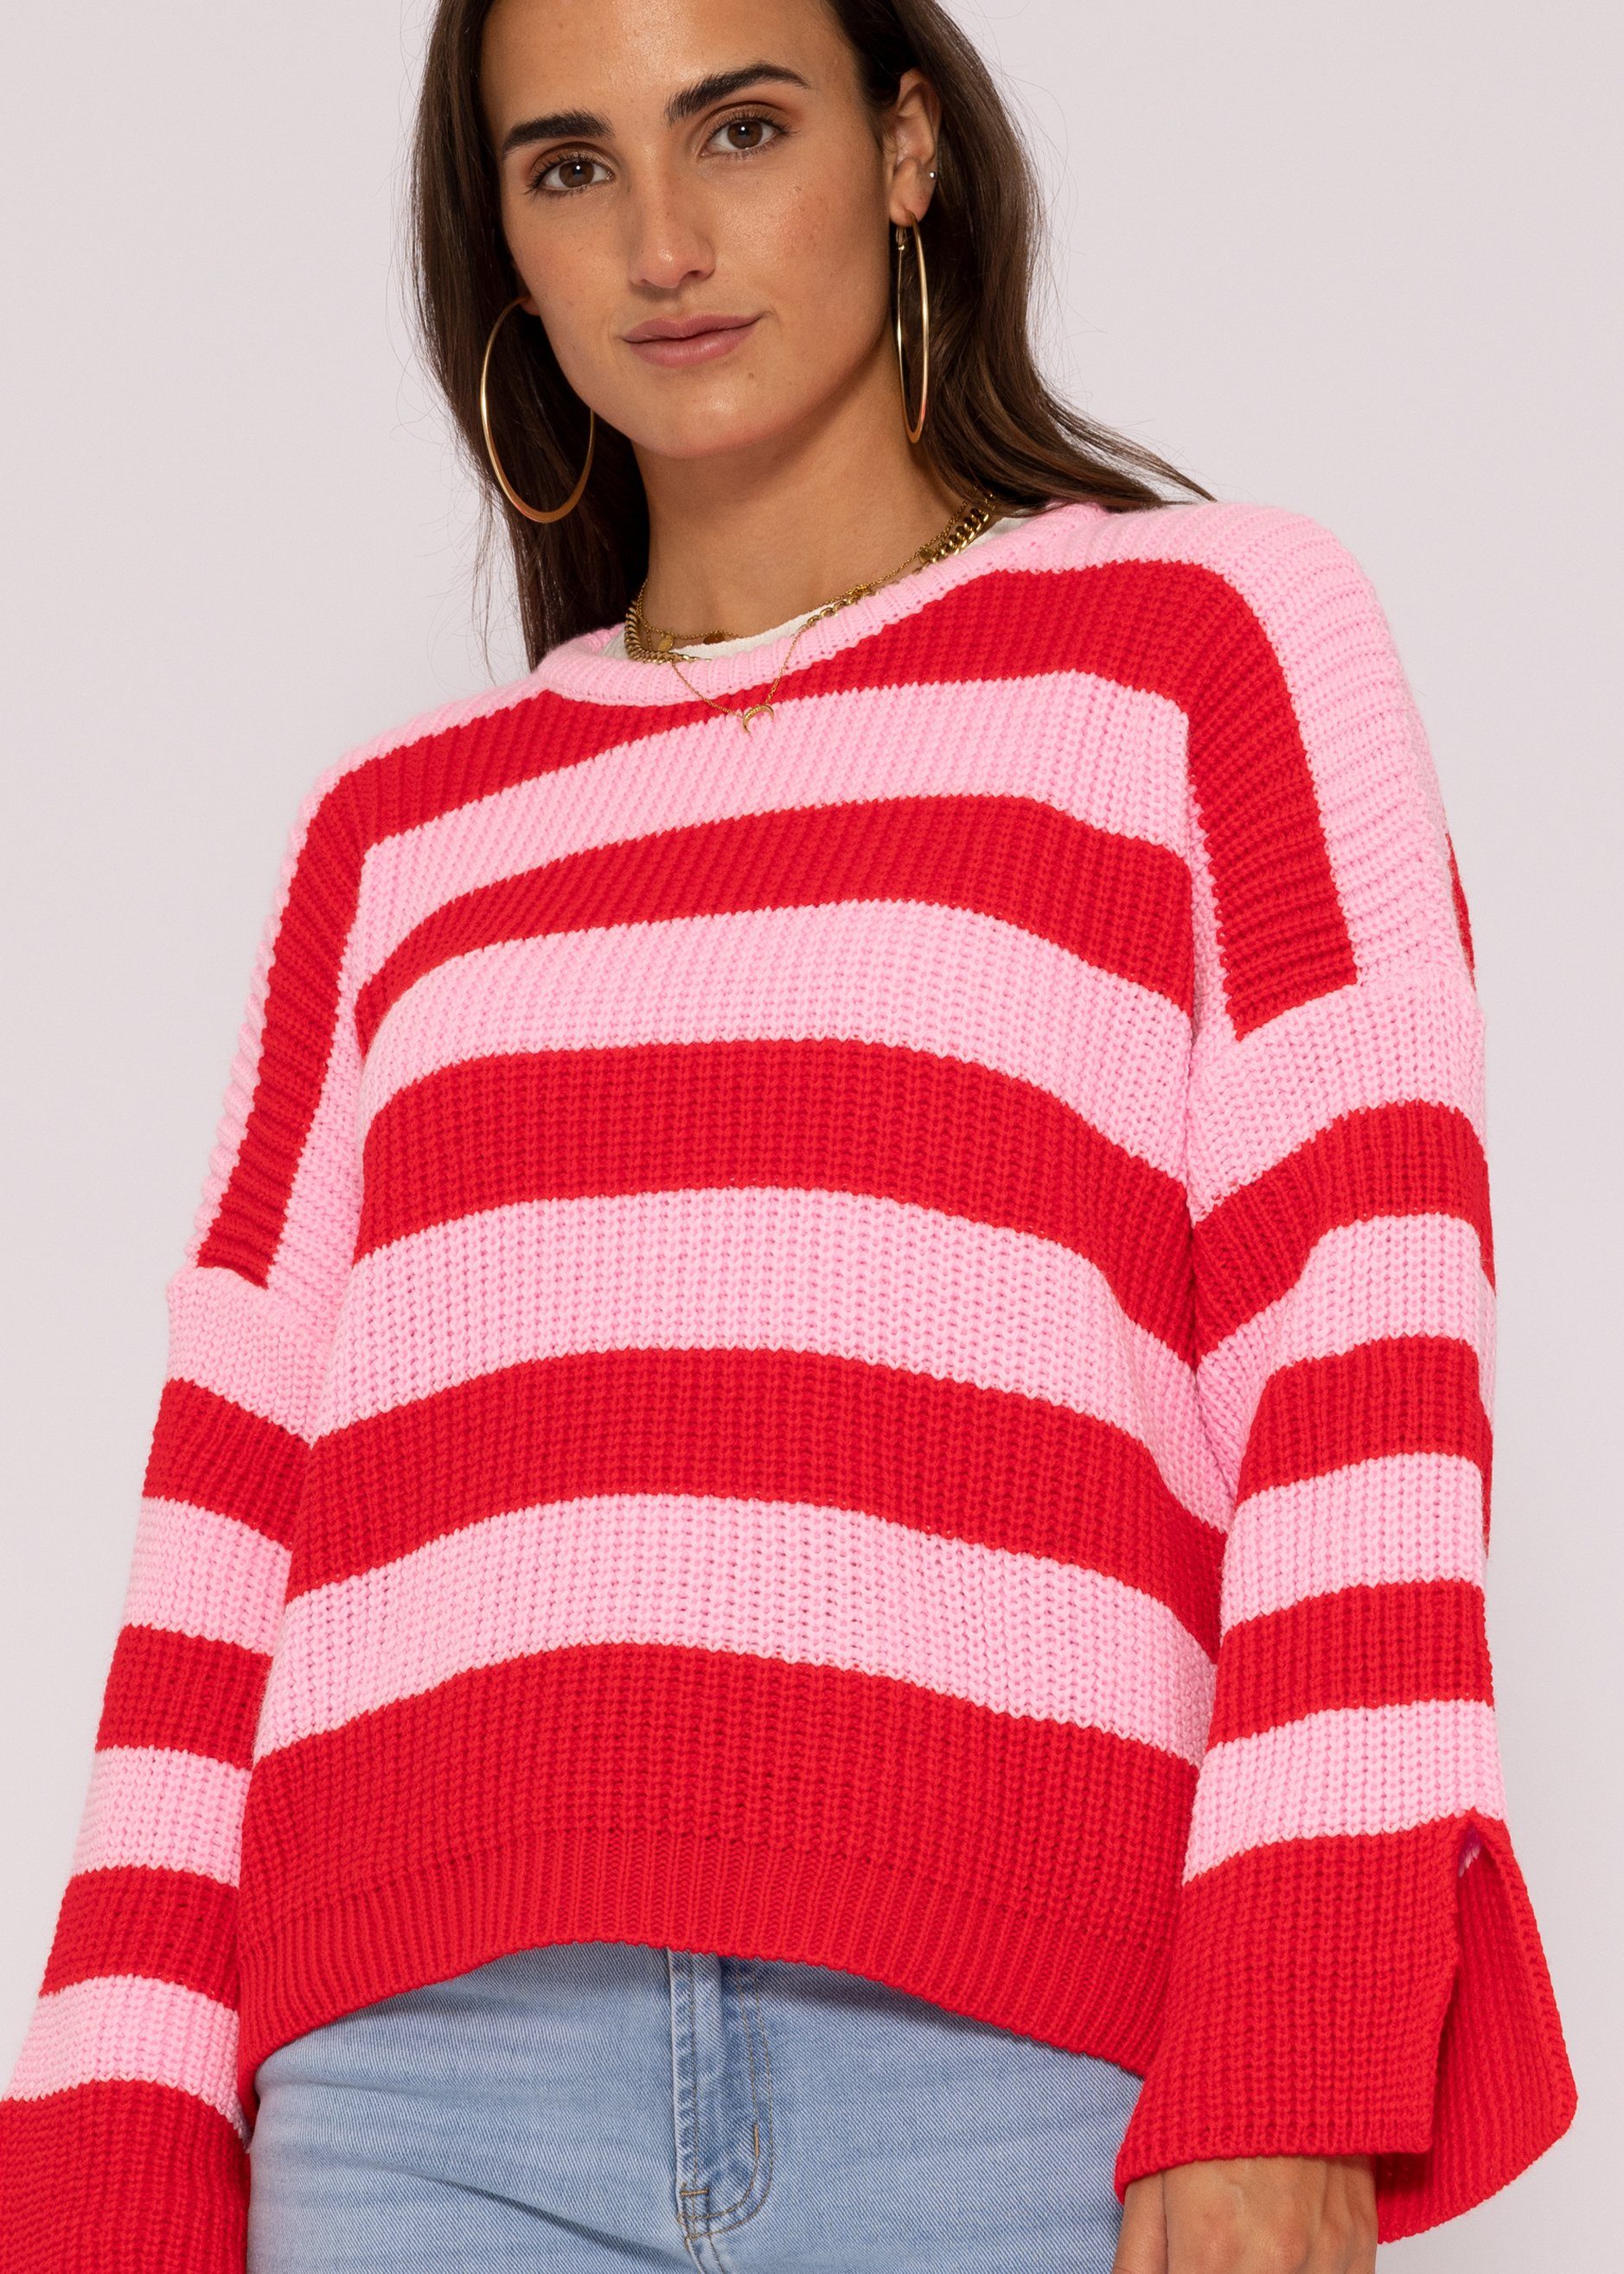 SASSYCLASSY Strickpullover Oversize Pullover Damen aus weichem Grobstrick  Lässiger Strickpullover mit Streifen, Made in Italy, One Size (Gr. 36-42)